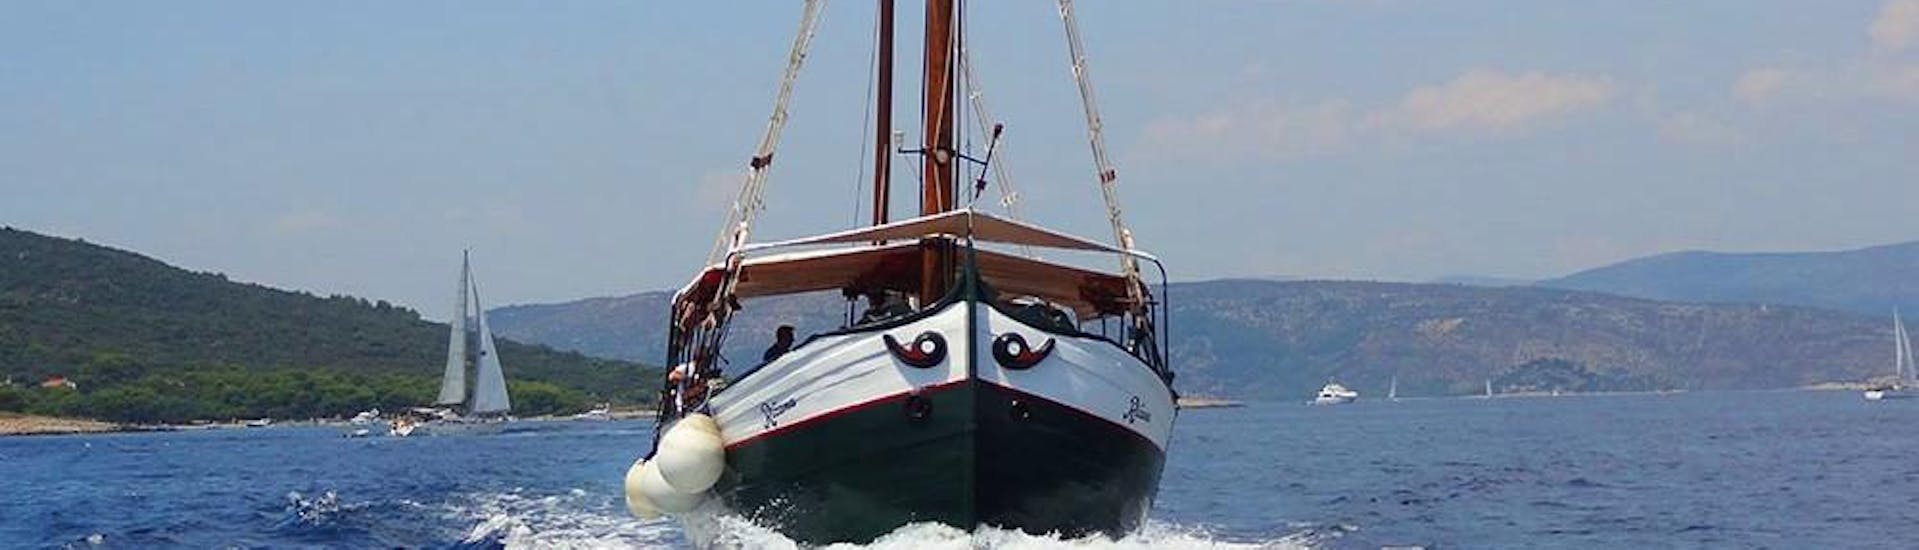 Lors d'une balade en bateau au Blue Lagoon depuis Trogir avec Max Nautica Split, le bateau se dirige vers le Blue Lagoon.